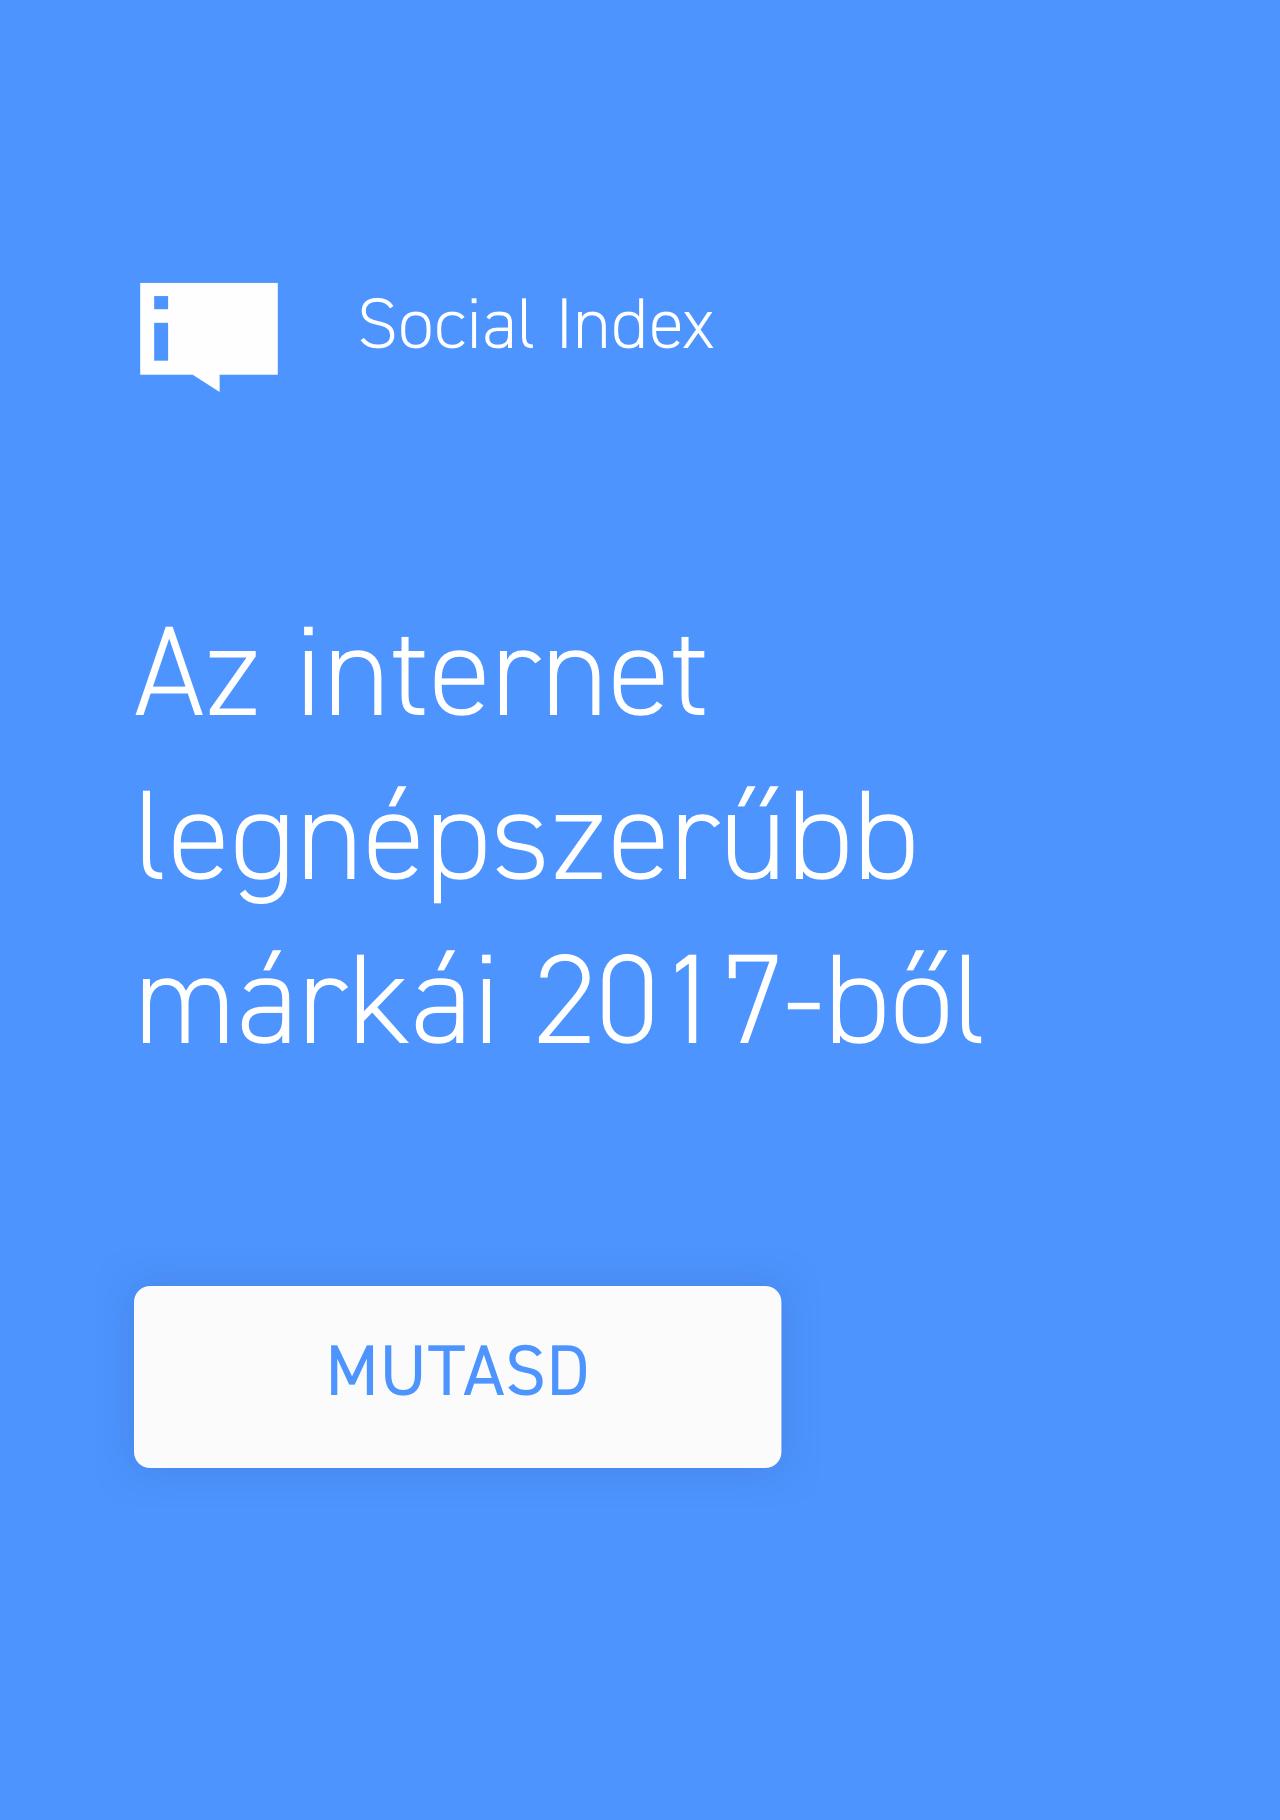 Social Index